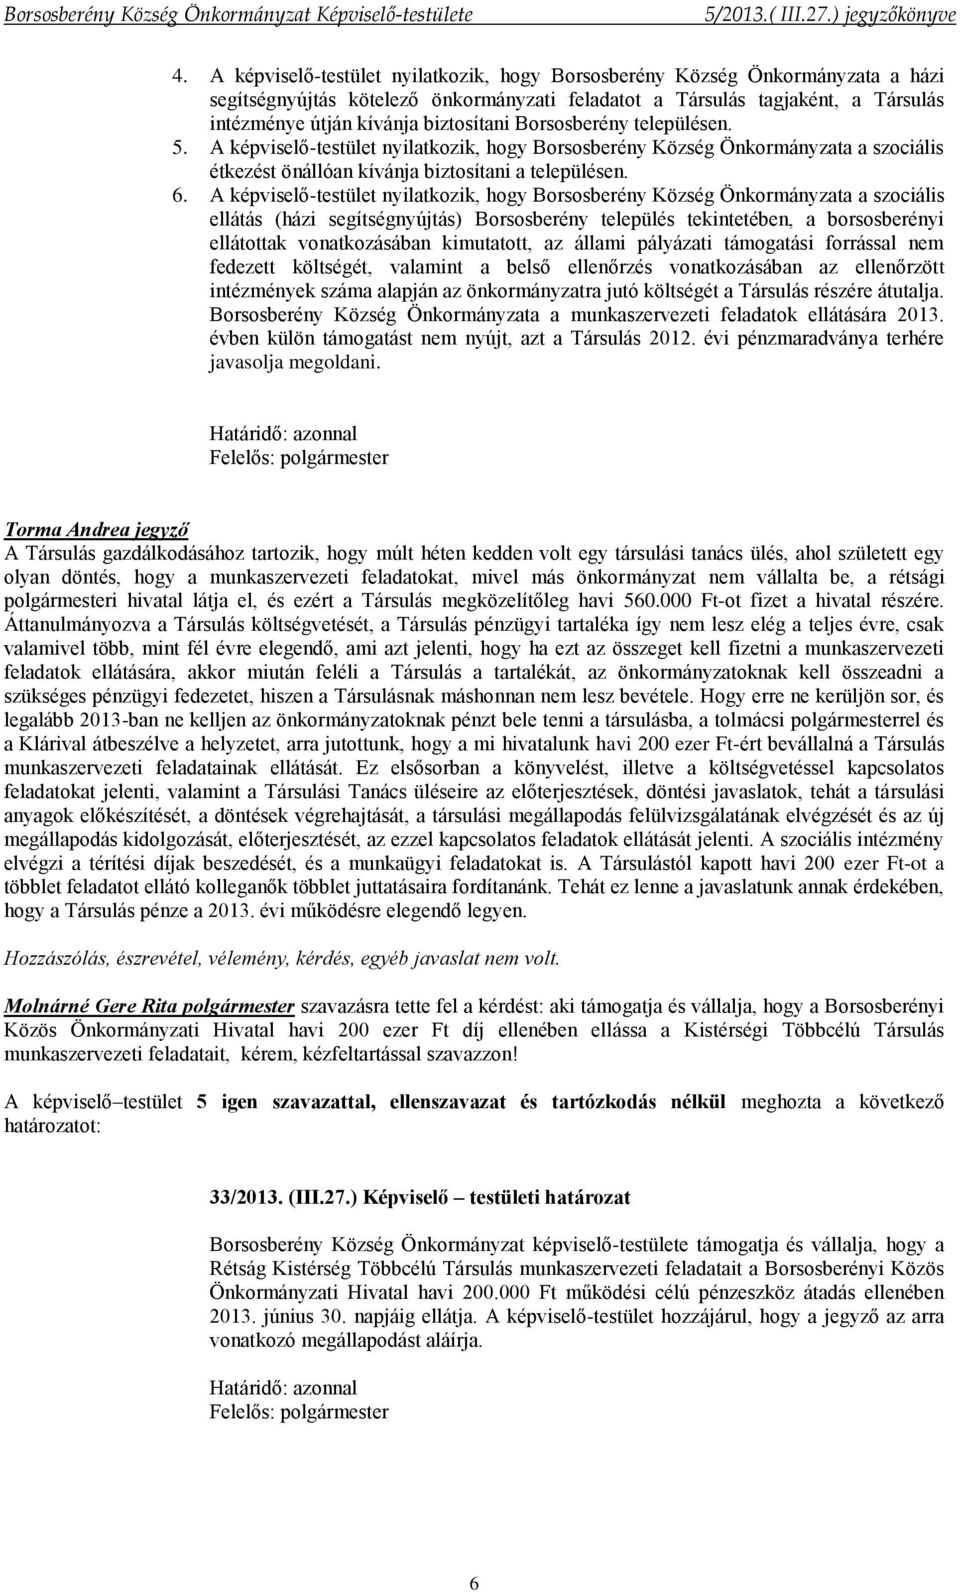 A képviselő-testület nyilatkozik, hogy Borsosberény Község Önkormányzata a szociális ellátás (házi segítségnyújtás) Borsosberény település tekintetében, a borsosberényi ellátottak vonatkozásában